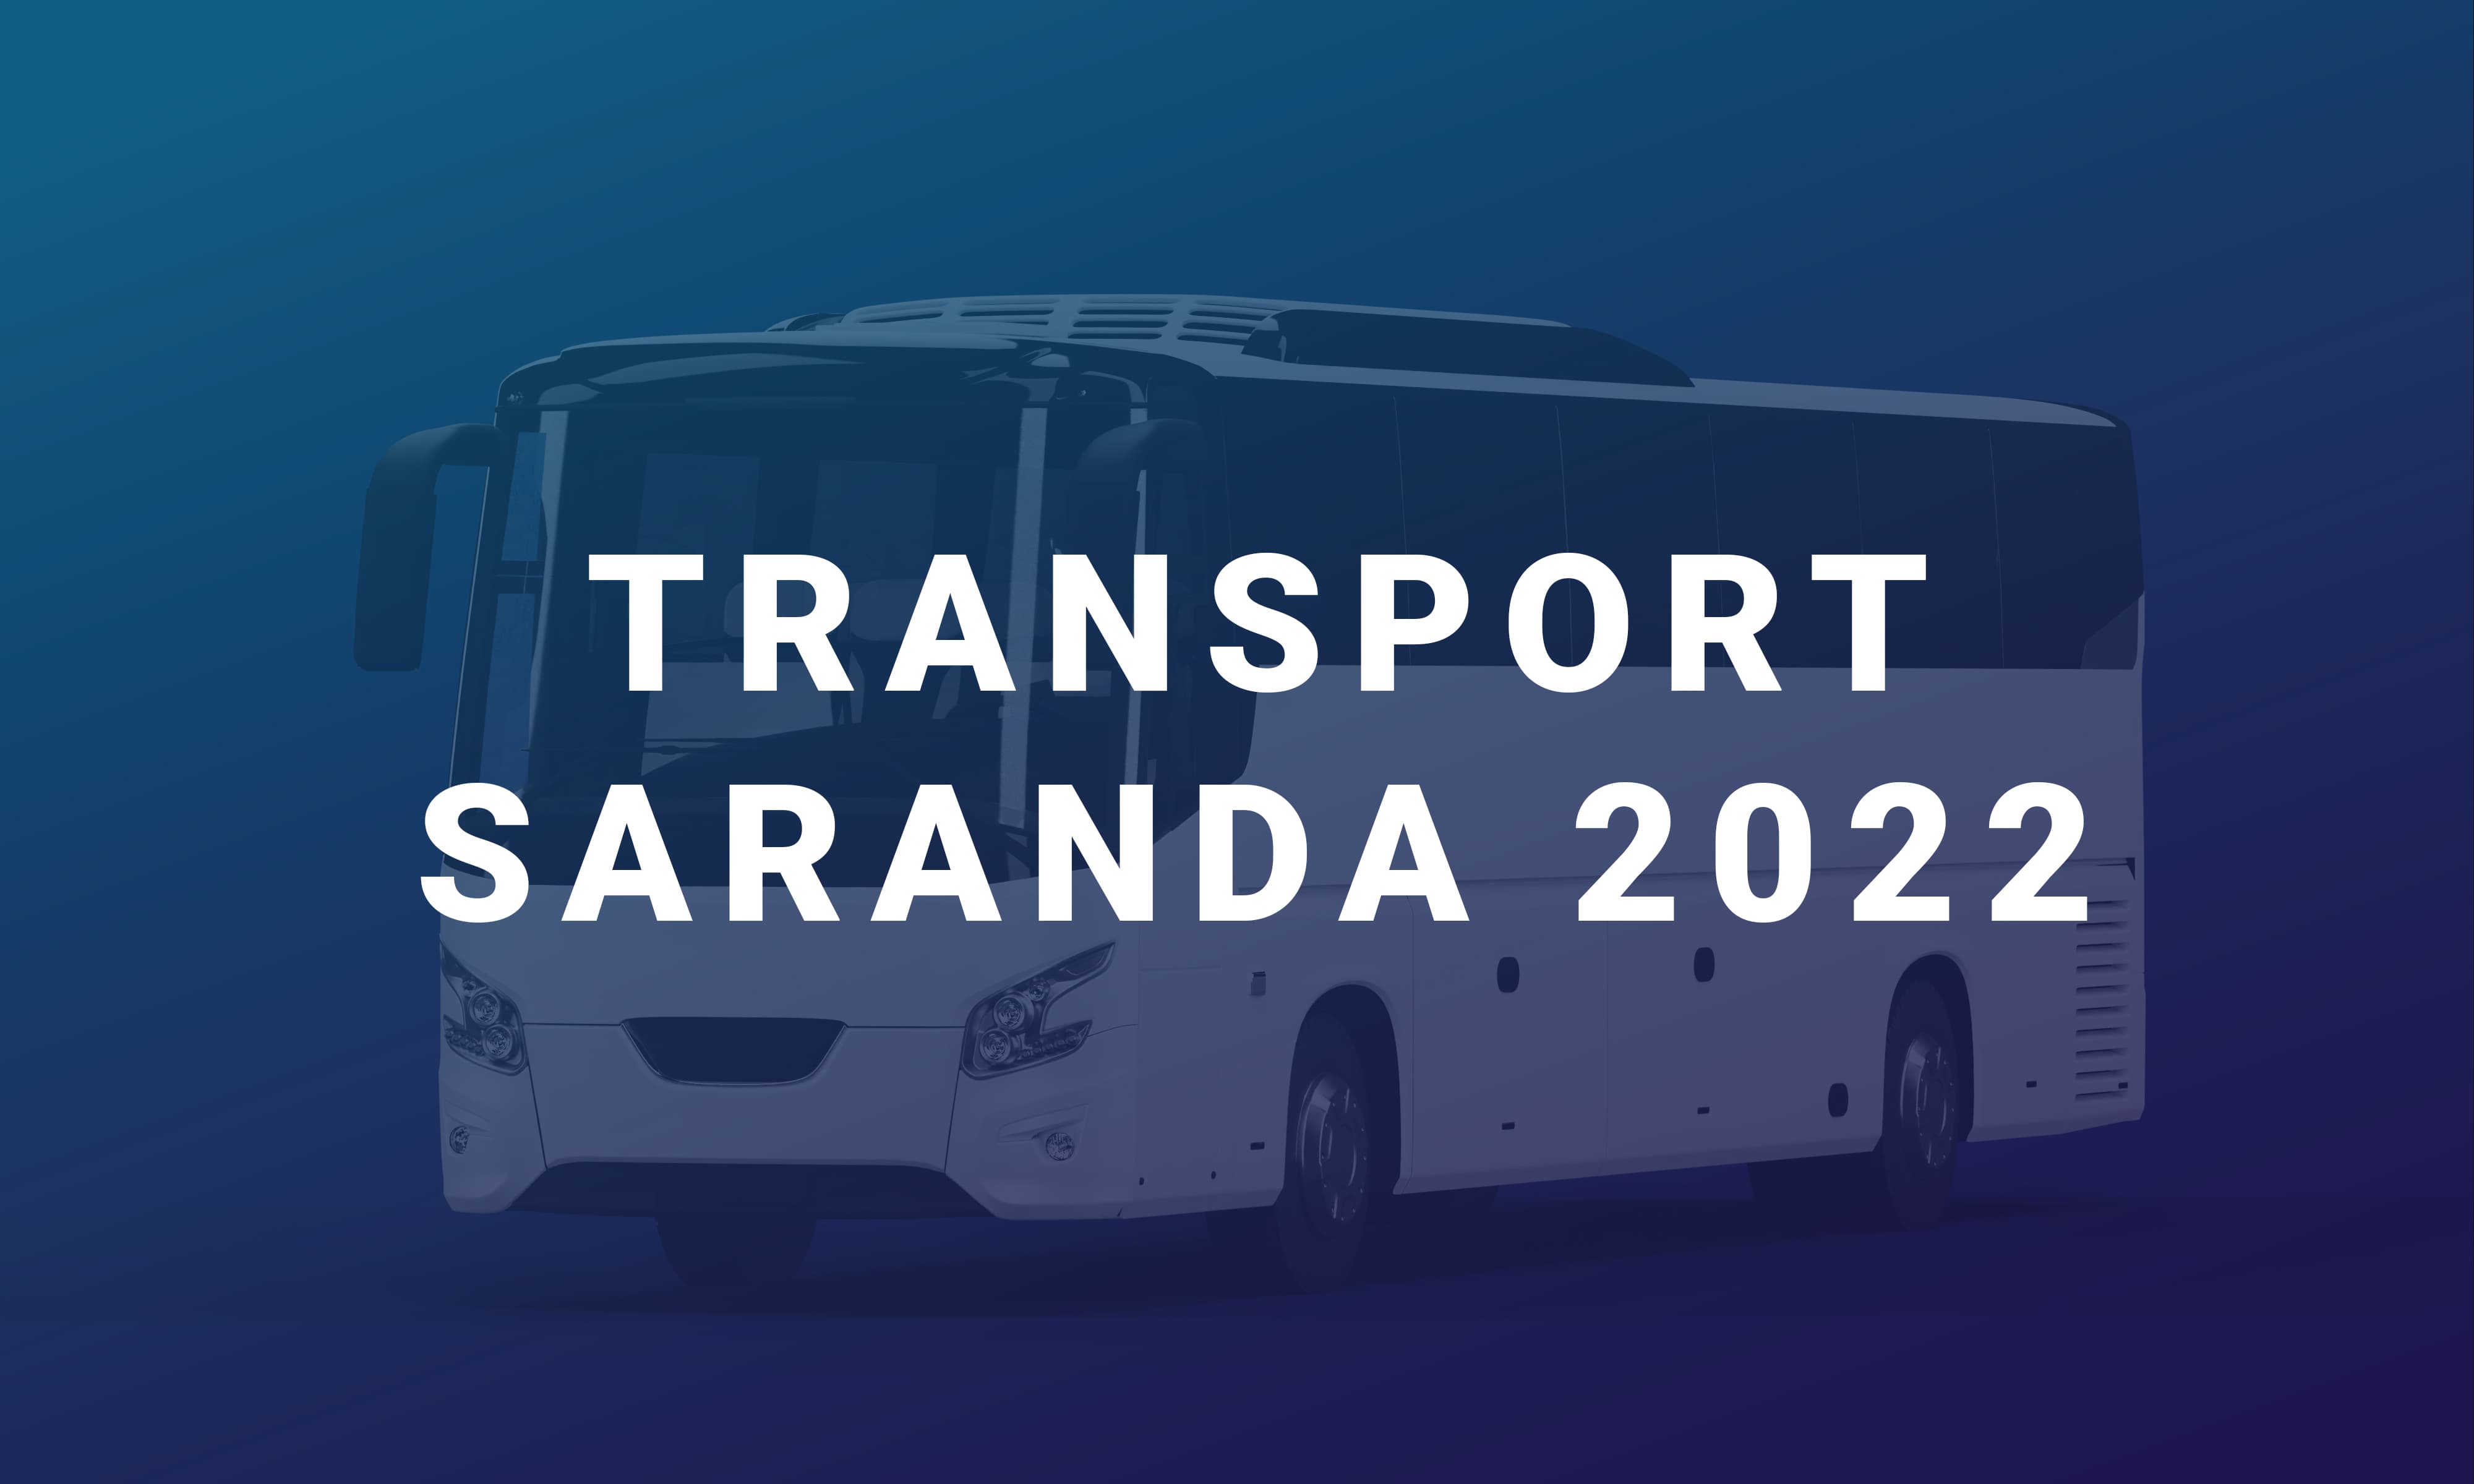 Transport Saranda 2022 është një linjë ndërqytetase me qendër në Sarandë që ofron një shërbim çdo ditë për në Vlorë dhe kthim.